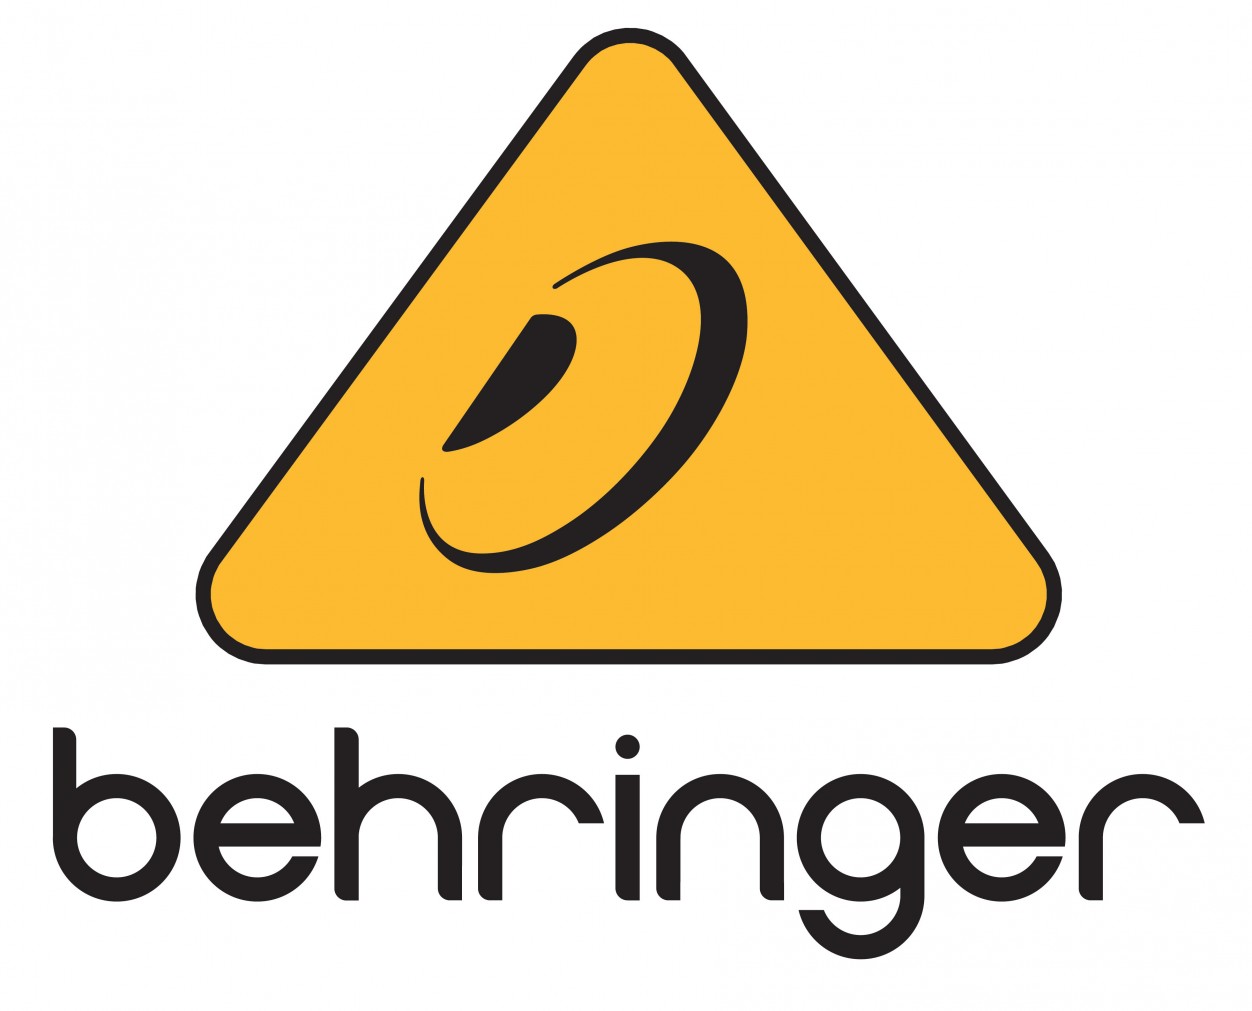 Behringer B1X универсальный портативный громкоговоитель мощностью 250 Вт с питанием от аккумулятора, цифровым микшером, эффектами, дистанционным управлением через мобильное приложение iOS/Android, потоковой передачей звука по Bluetooth и возможностью